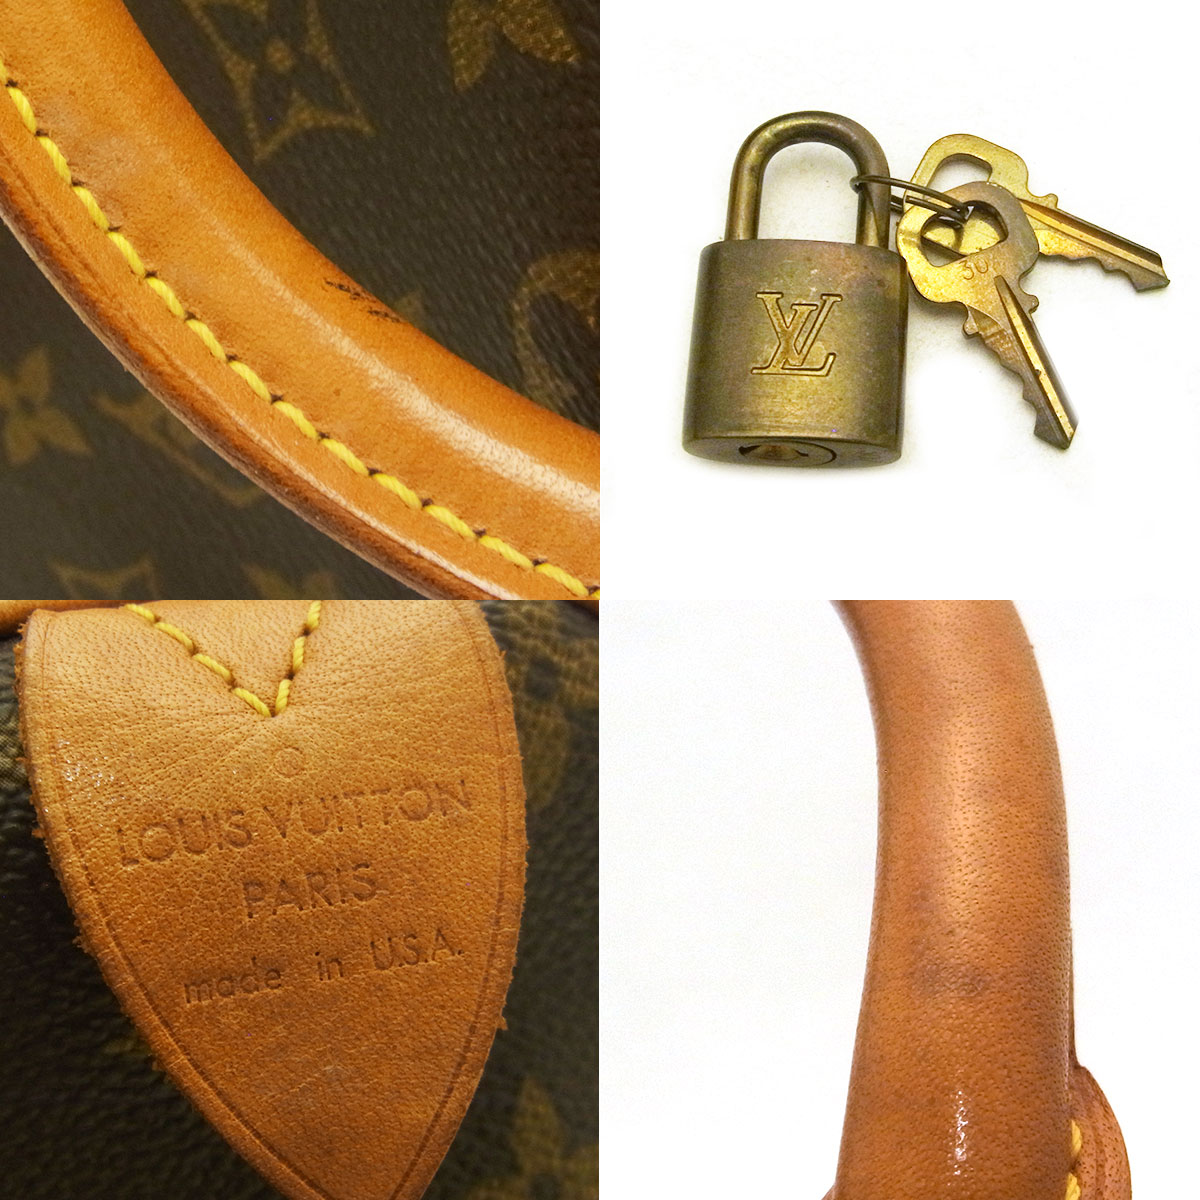 ルイヴィトン(Louis Vuitton) スピーディ30 M41526 ボストンバッグ 鍵 ...